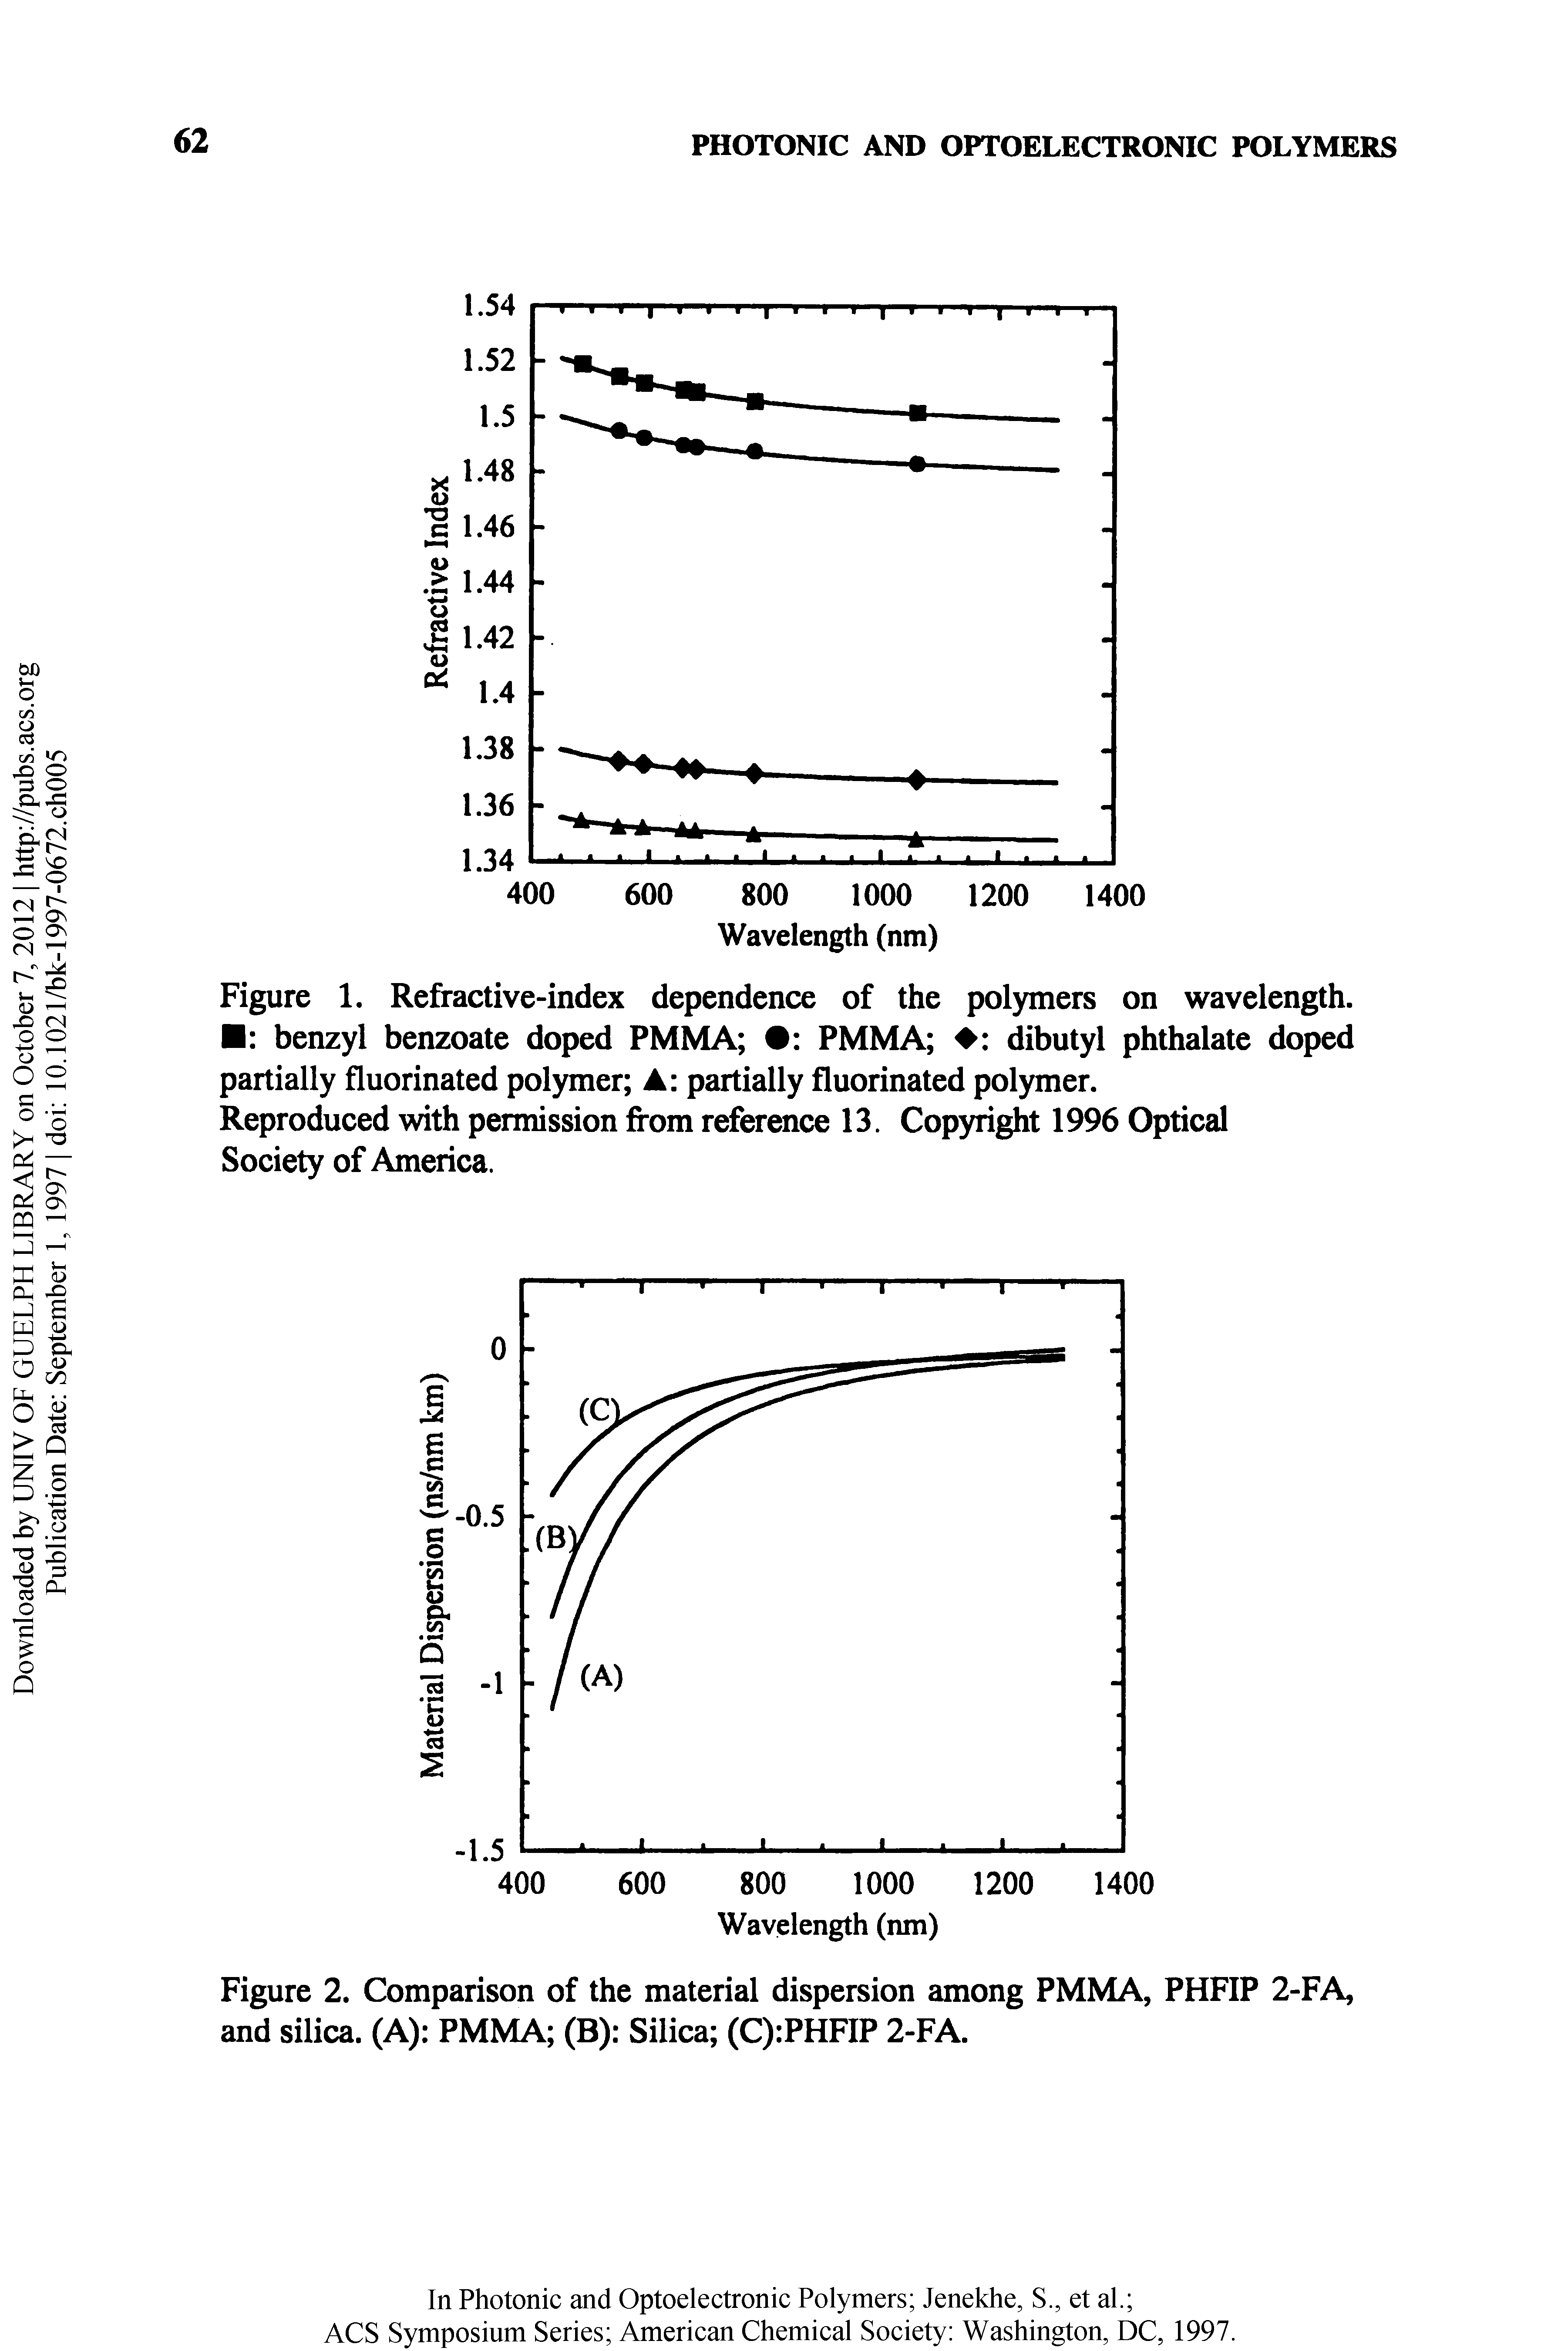 Figure 2. Comparison of the material dispersion among PMMA, PHFIP 2-FA, and silica. (A) PMMA (B) Silica (C) PHFIP 2-FA.